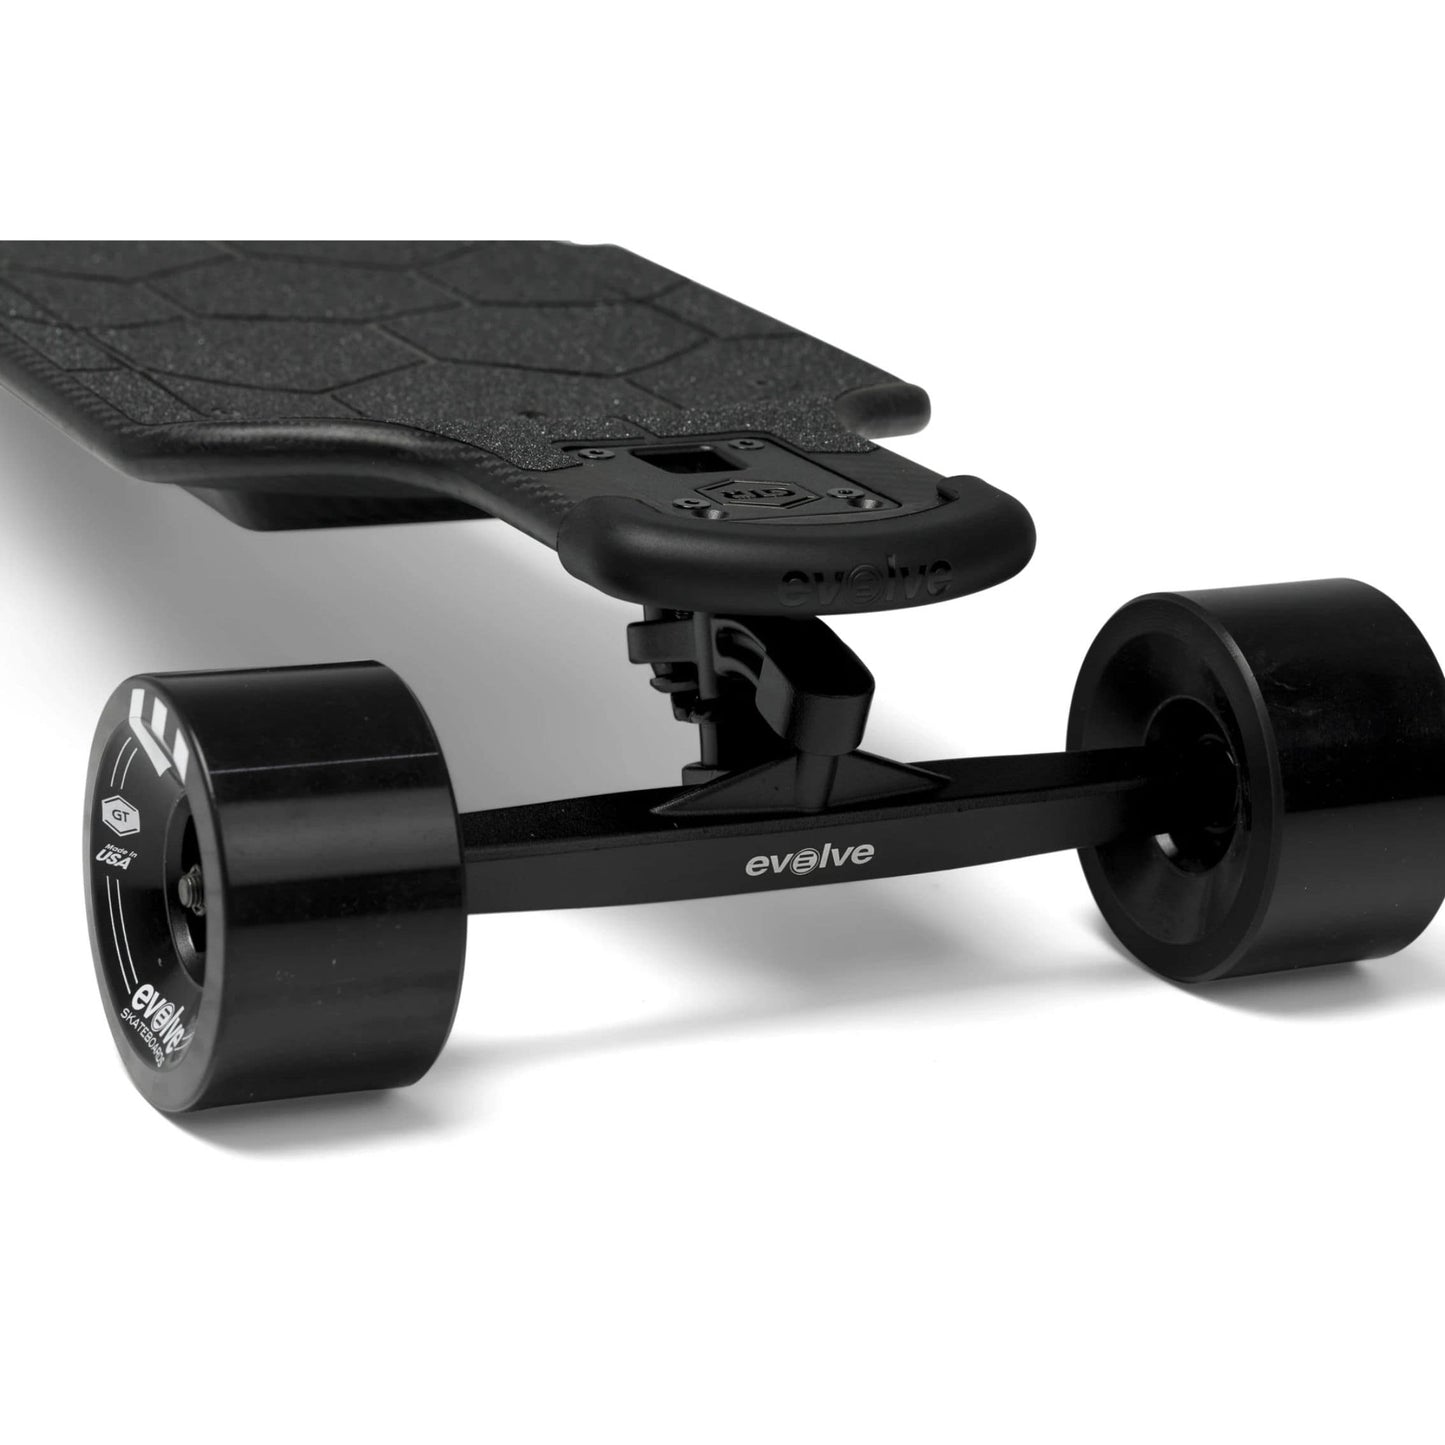 Evolve Carbon GTR 2 in 1 Electric Skateboard